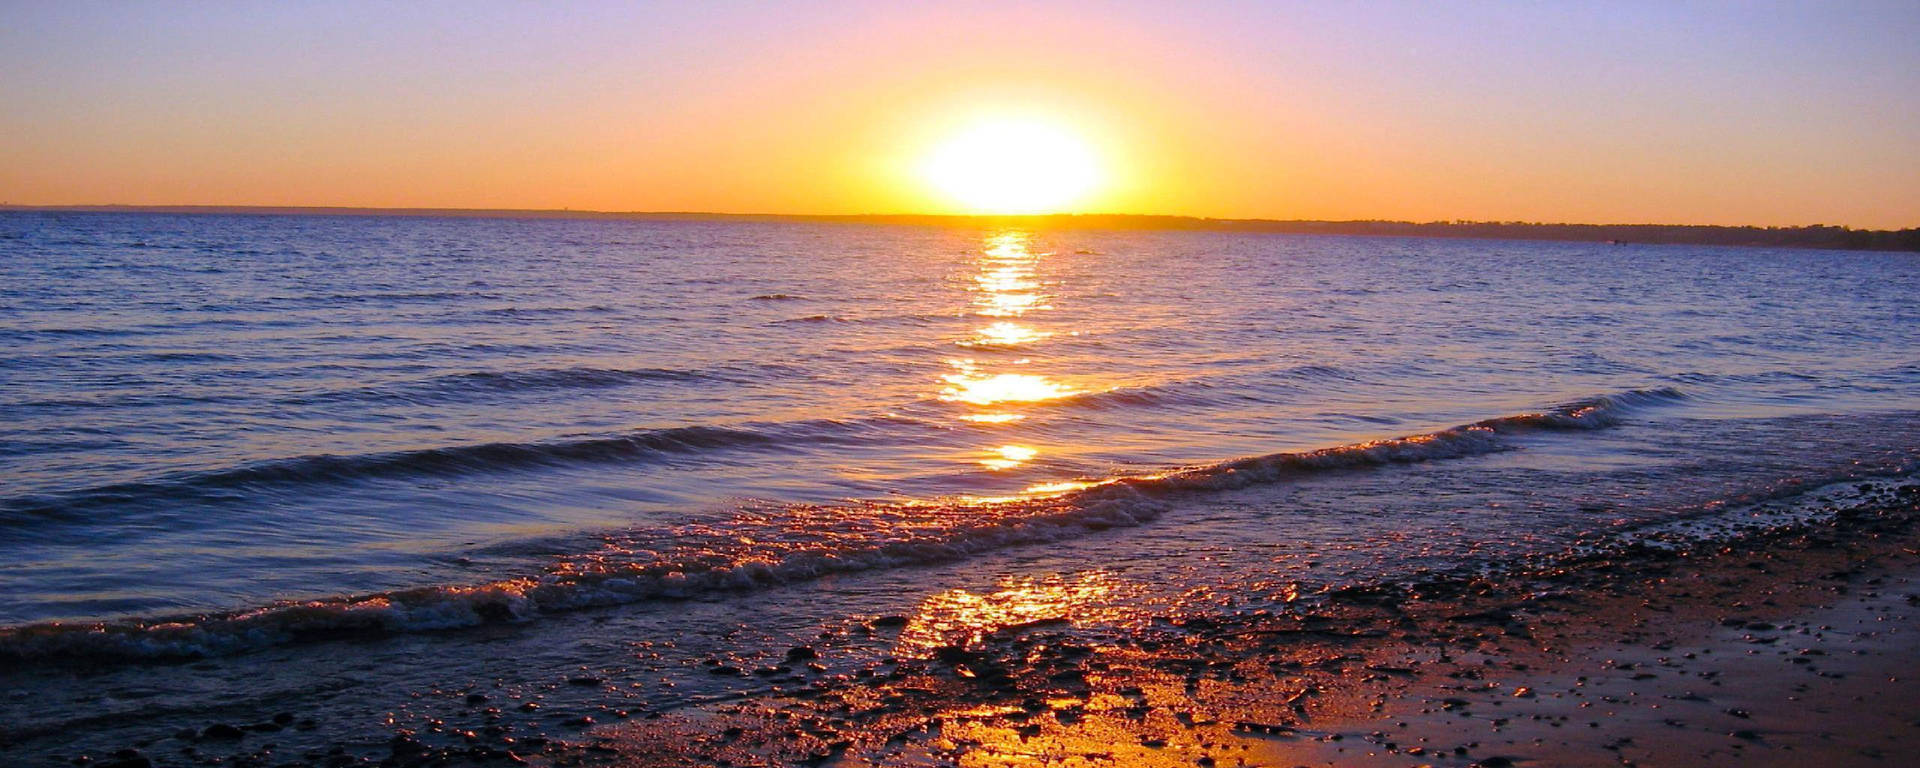 Beach Ocean Sunset